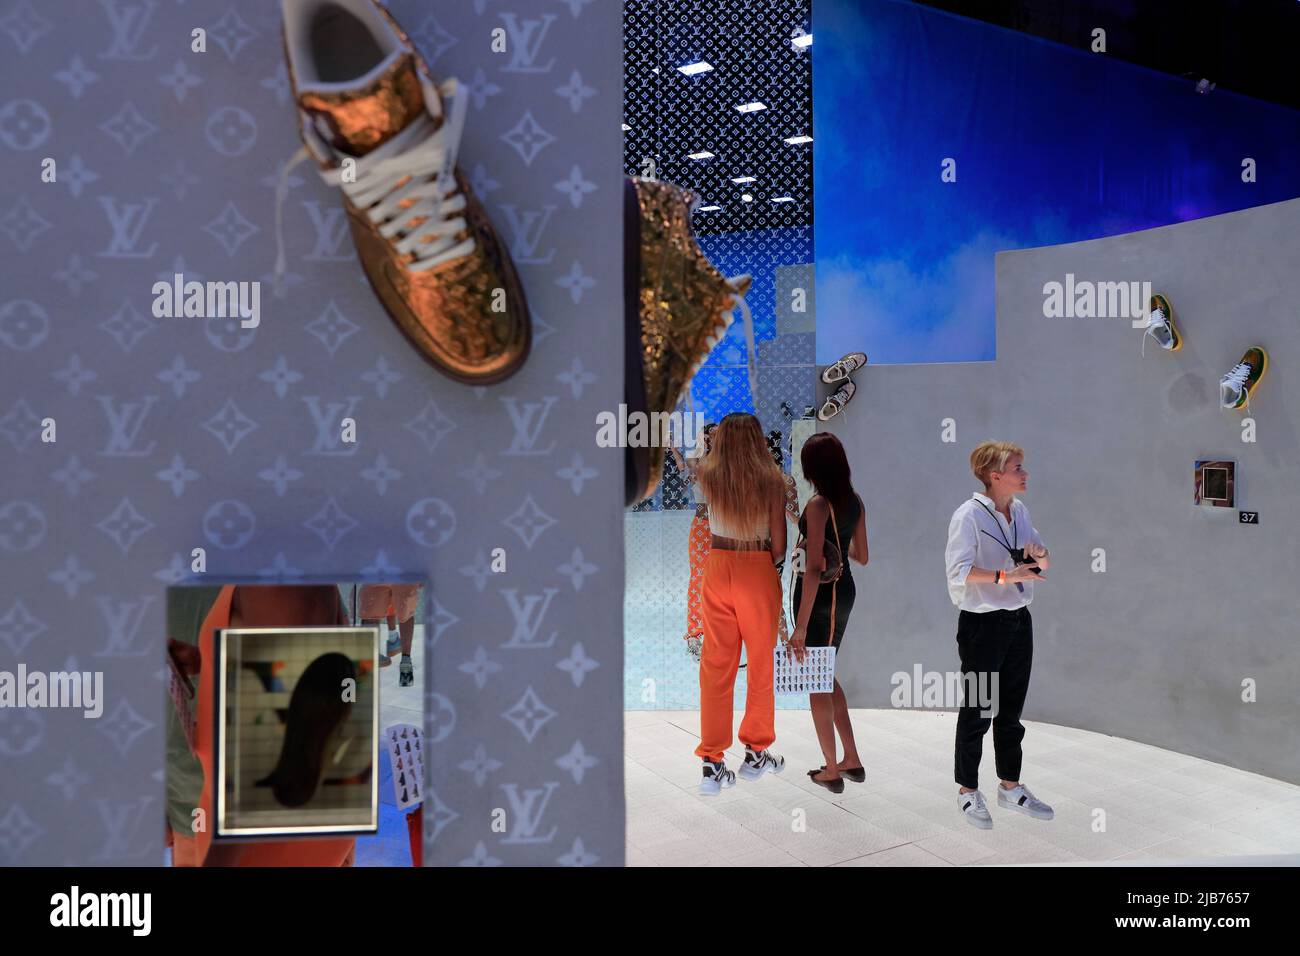 Les sneakers Louis Vuitton et Nike 'Air Force 1' conçues par Virgile Abloh sont exposées dans le spectacle rétrospectif au Greenpoint terminal Warehouse.Brooklyn.New York City.USA Banque D'Images